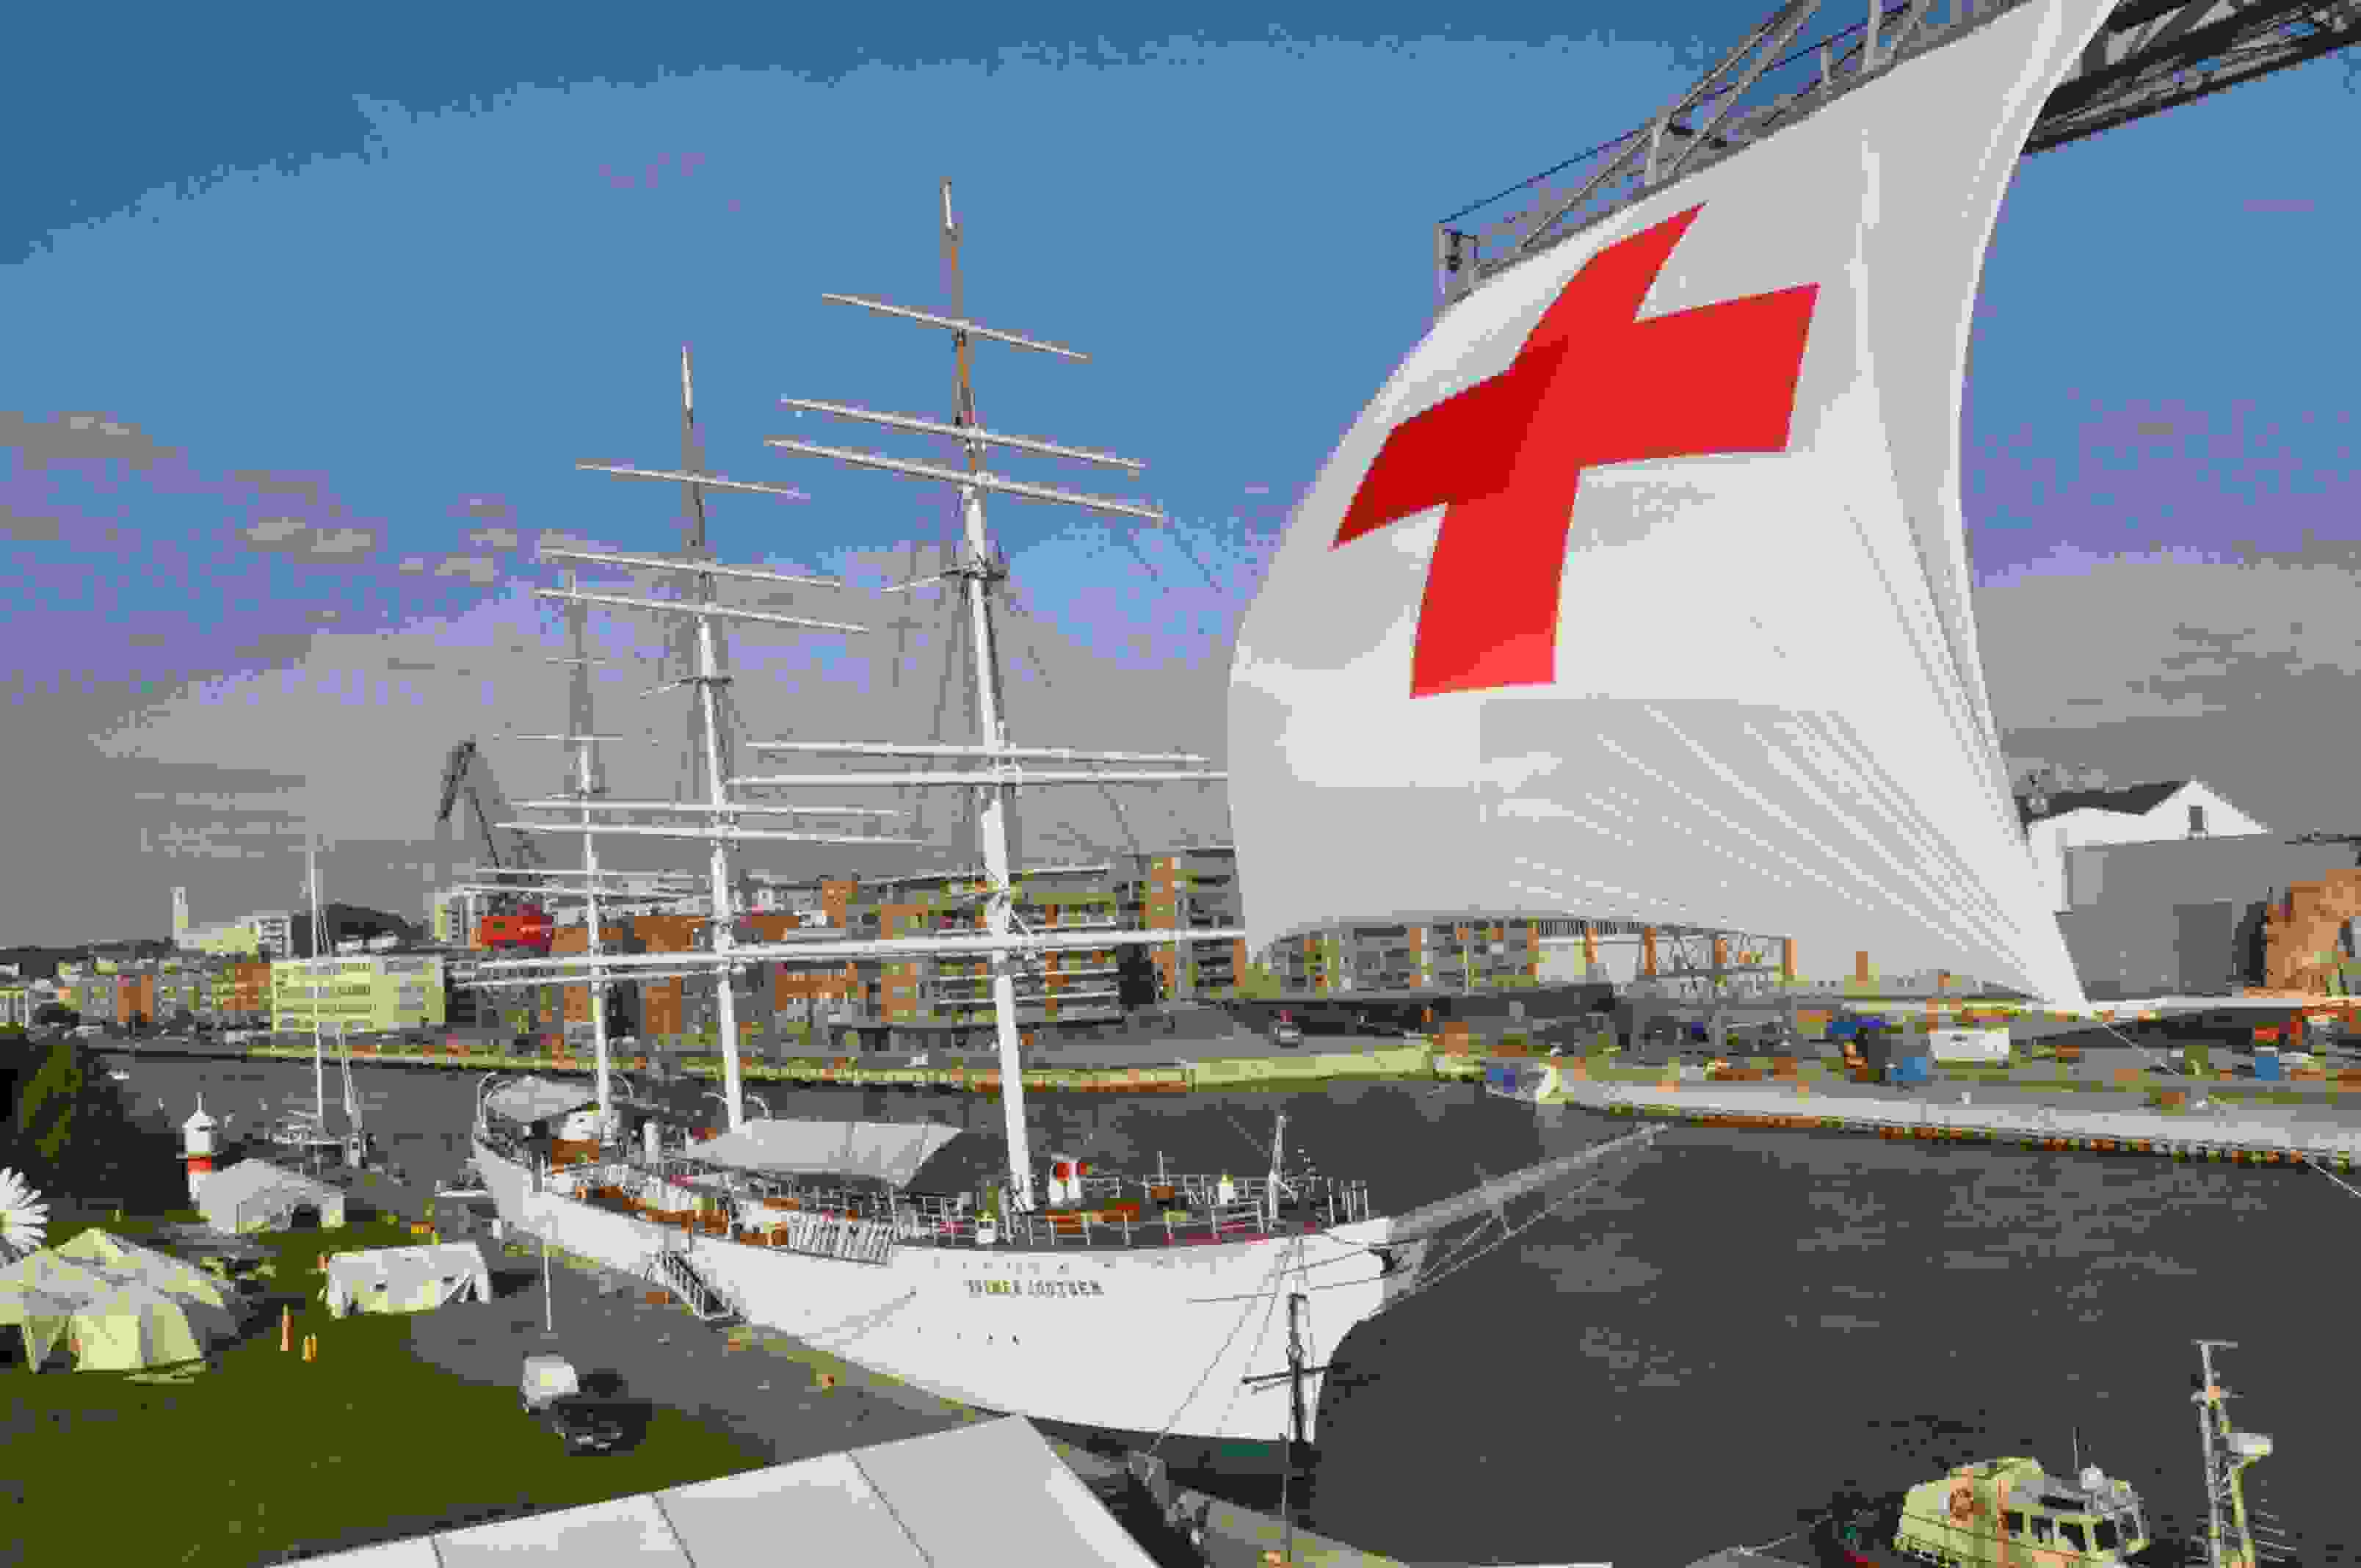 Suomen Joutsen laiva Aurajoessa, jonka edessä jättimäinen lippu, jossa punainen risti.